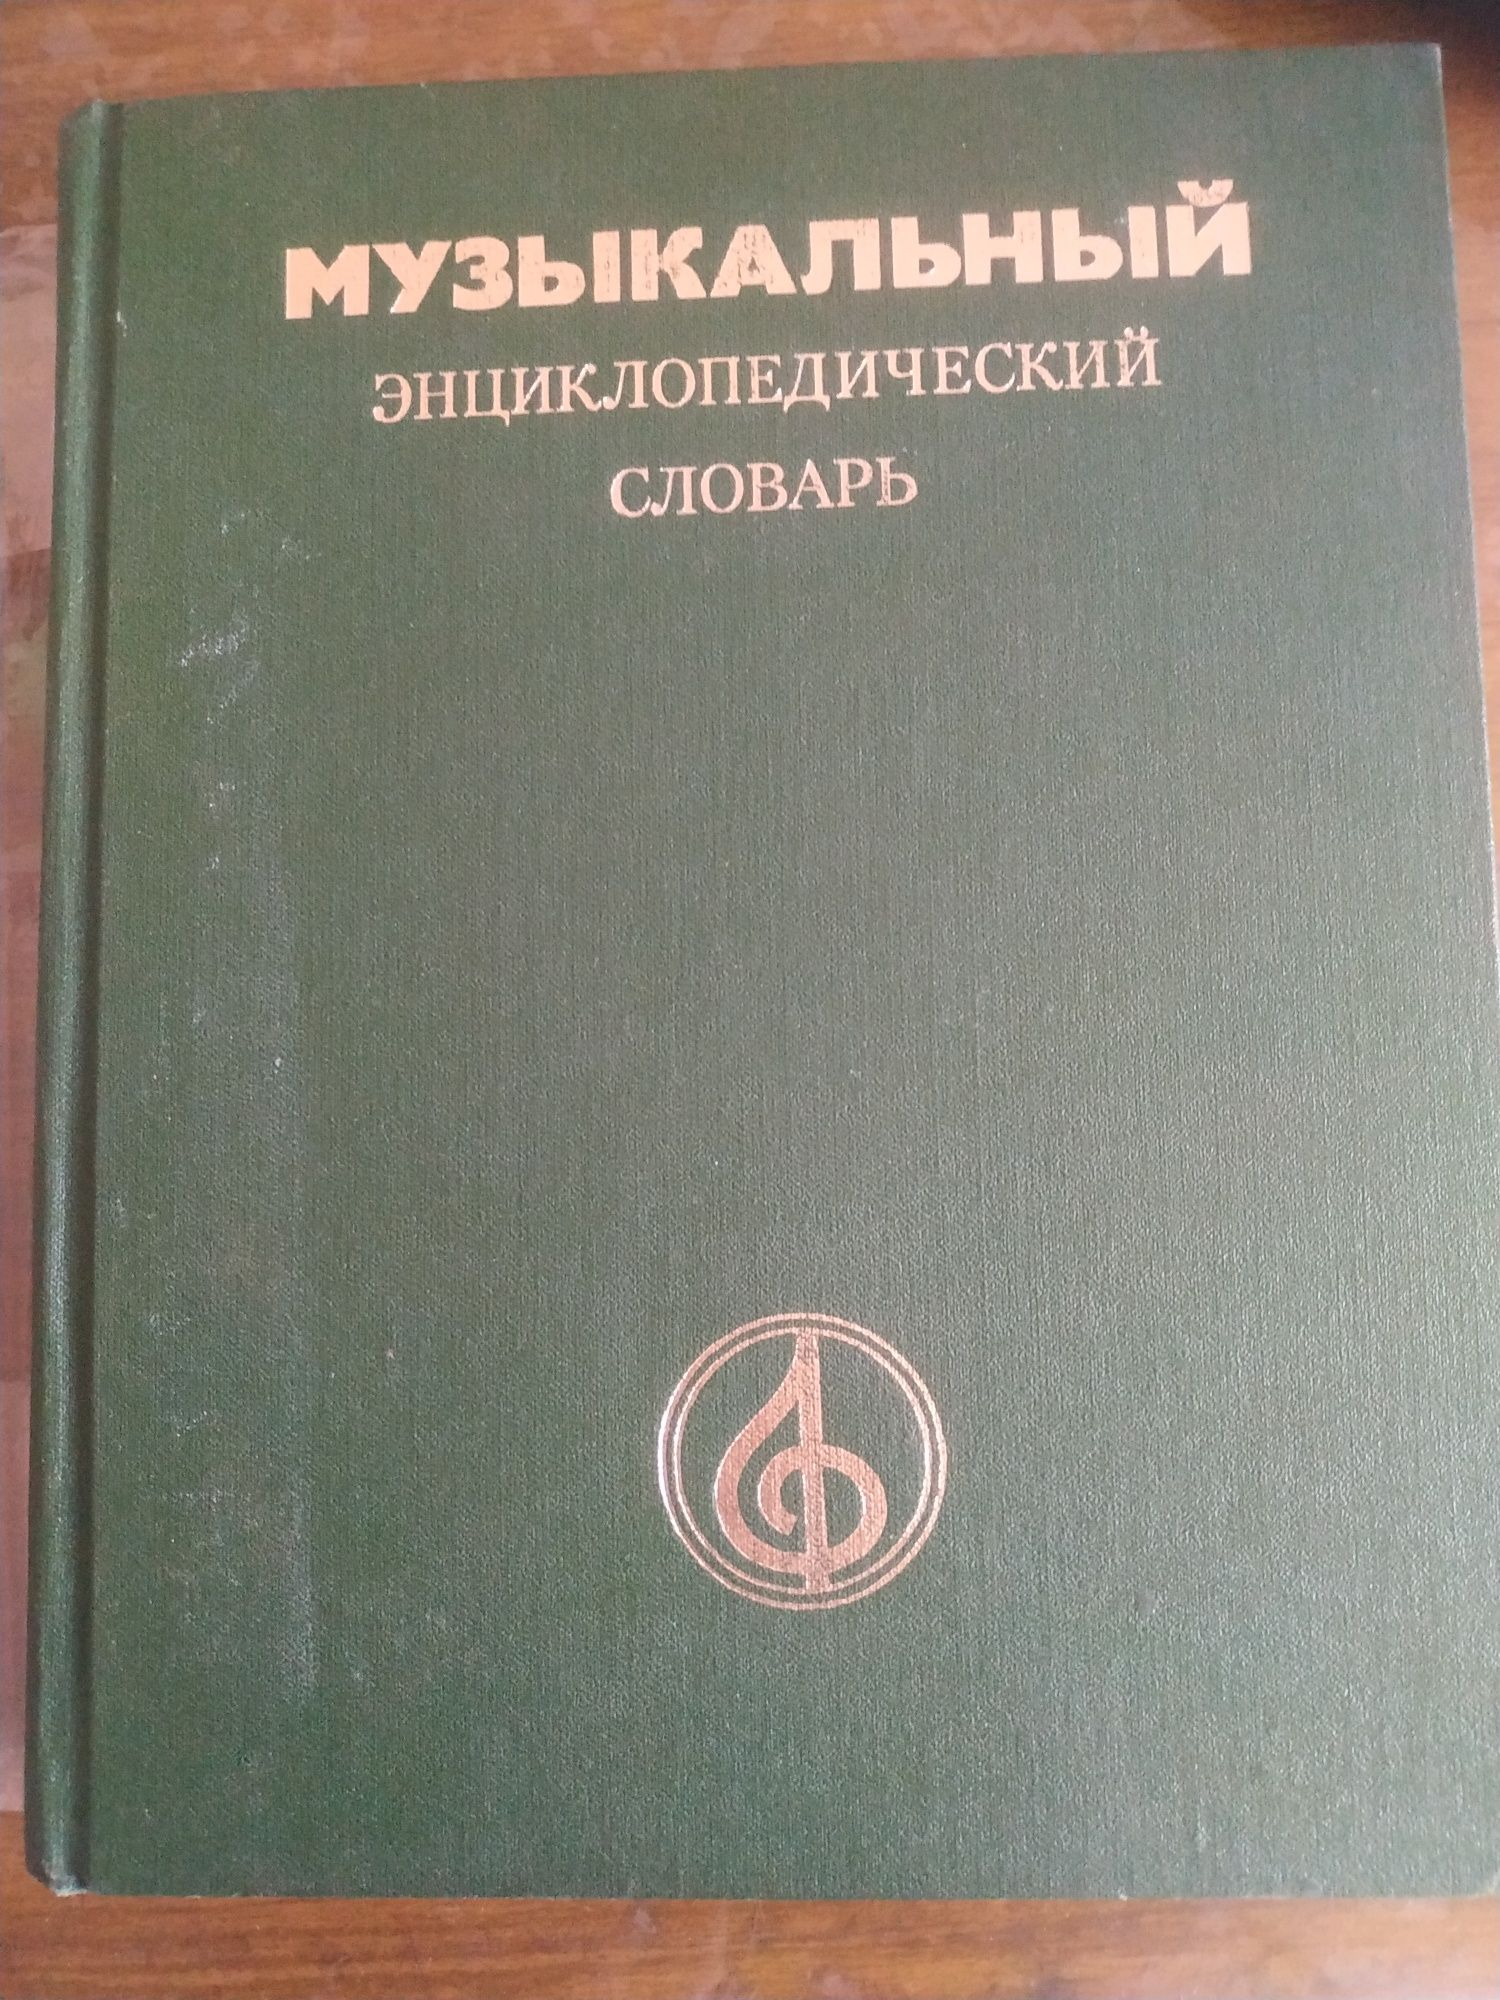 Музыкальный Энциклопедический Словарь